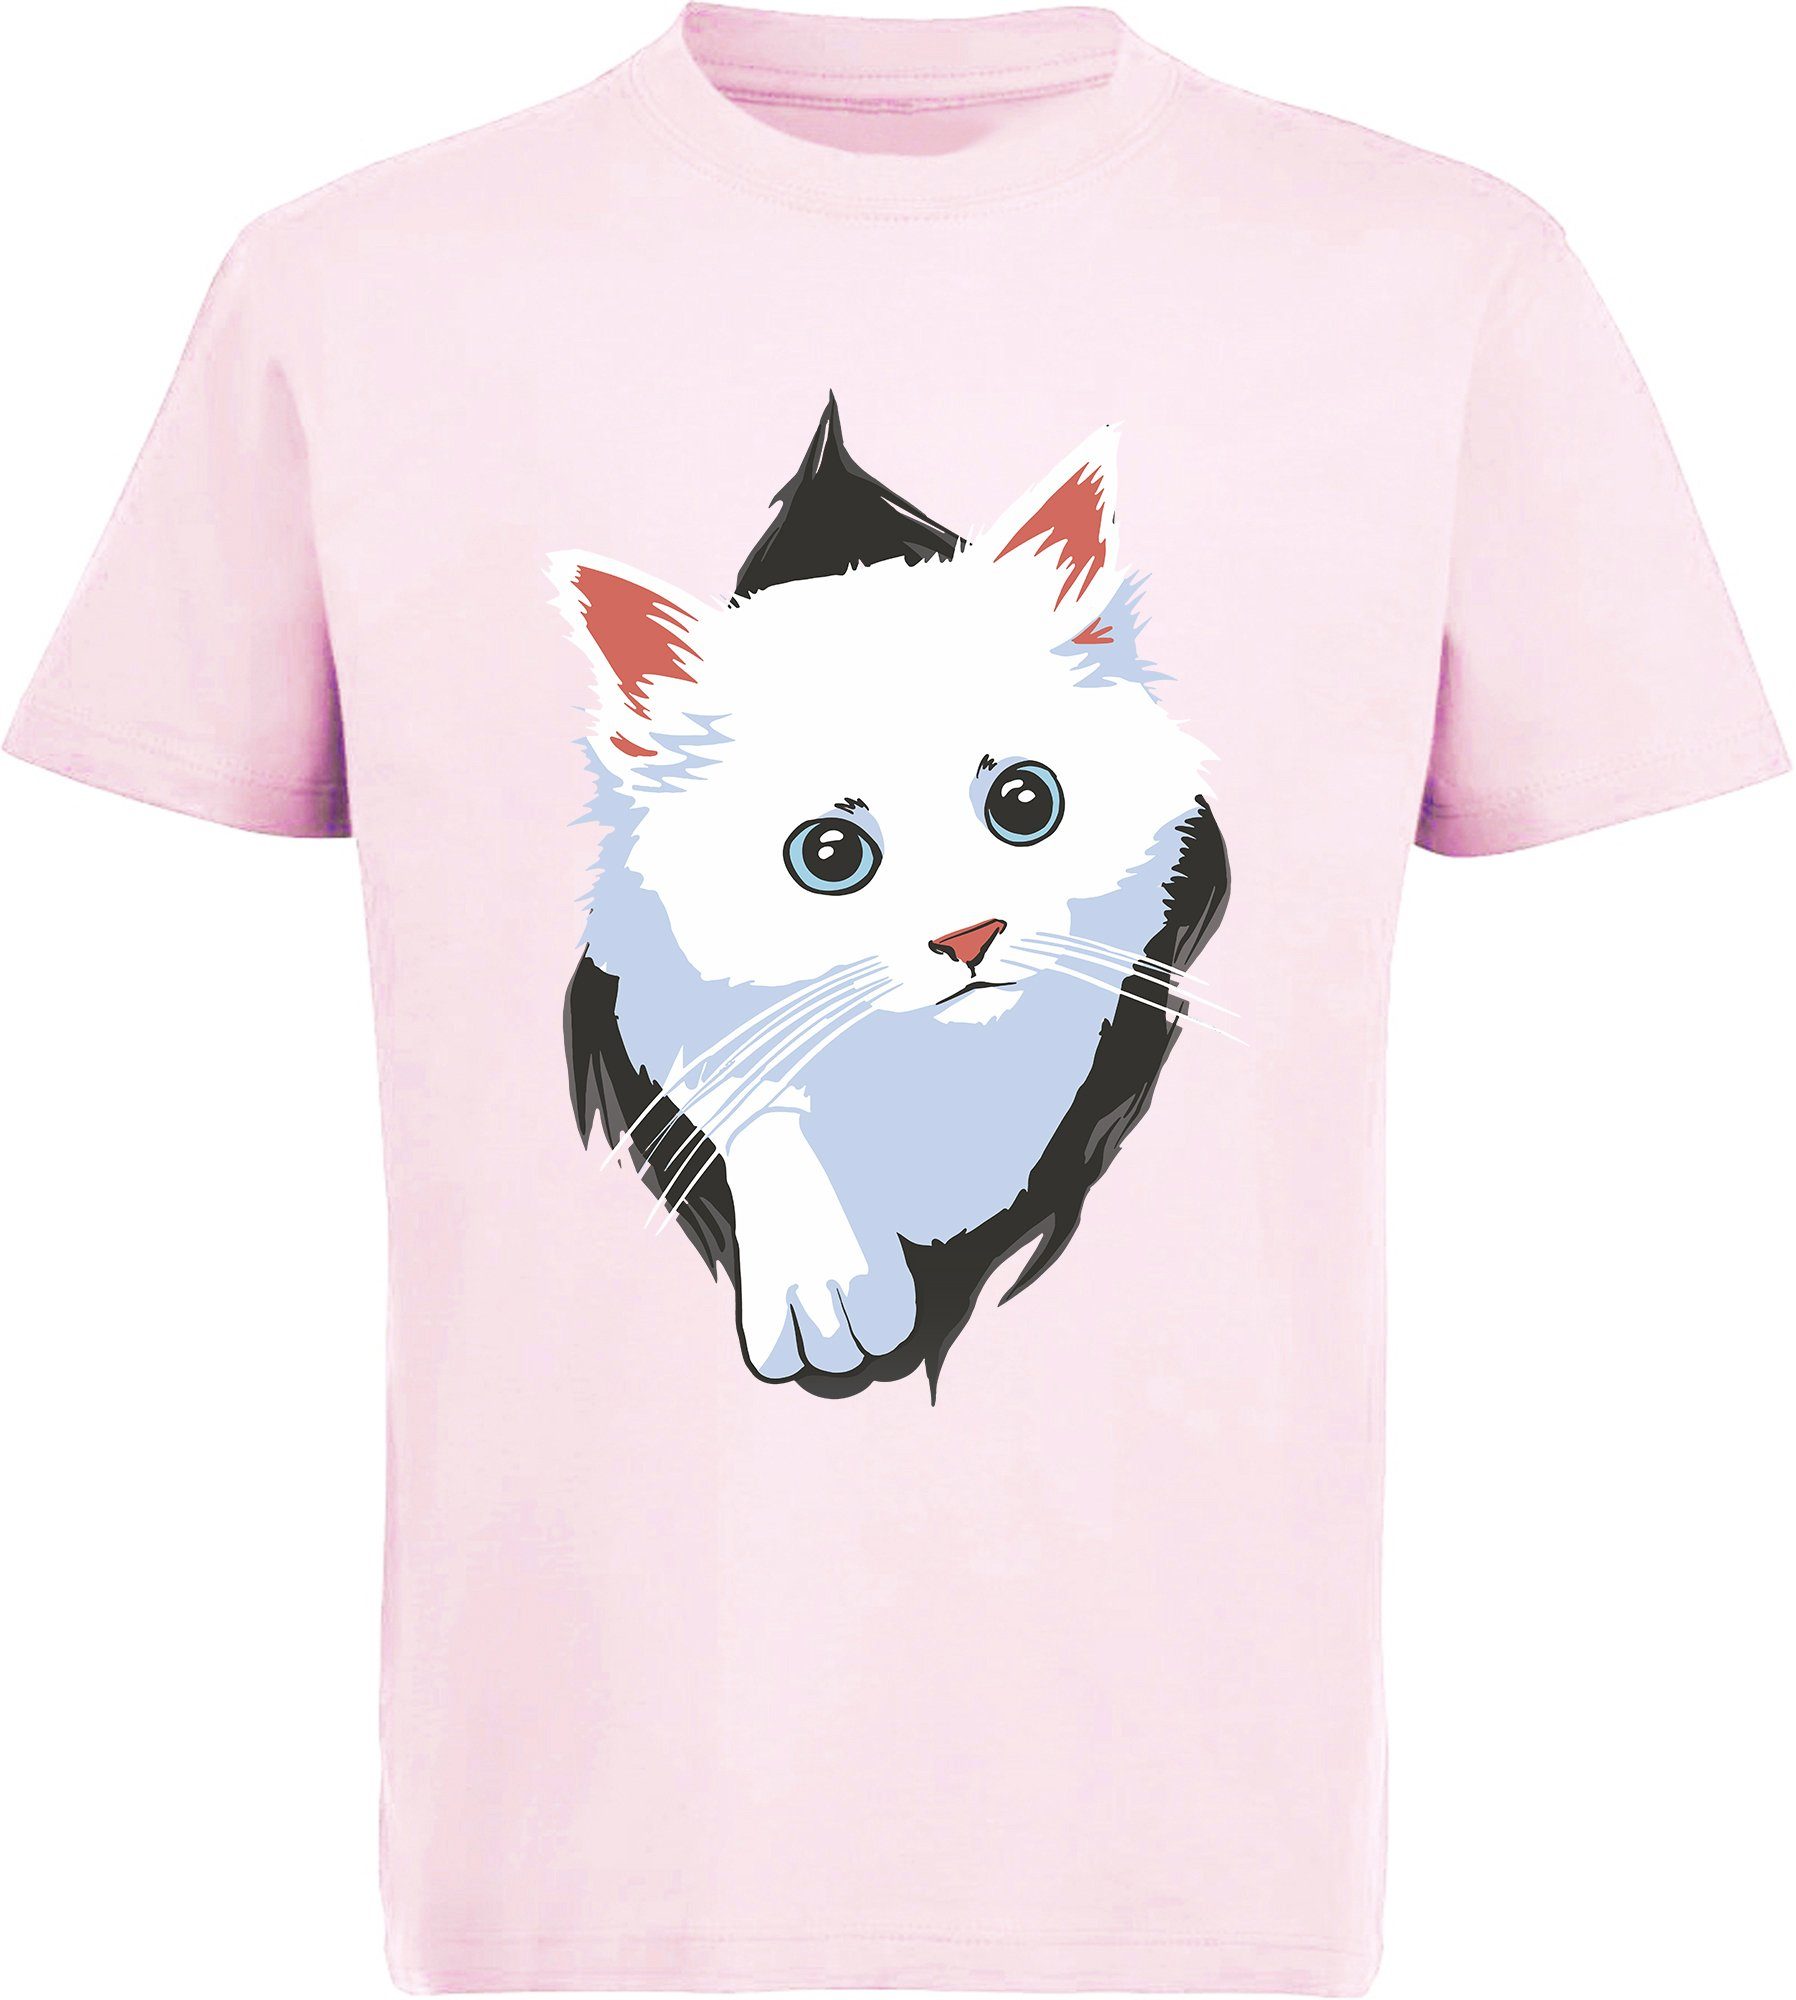 rosa, Shirt rot, MyDesign24 T-Shirt Mädchen weiße schwarz, Katzen bedrucktes Aufdruck, aus - Baumwollshirt mit i113 Print-Shirt weiß, dem Katze